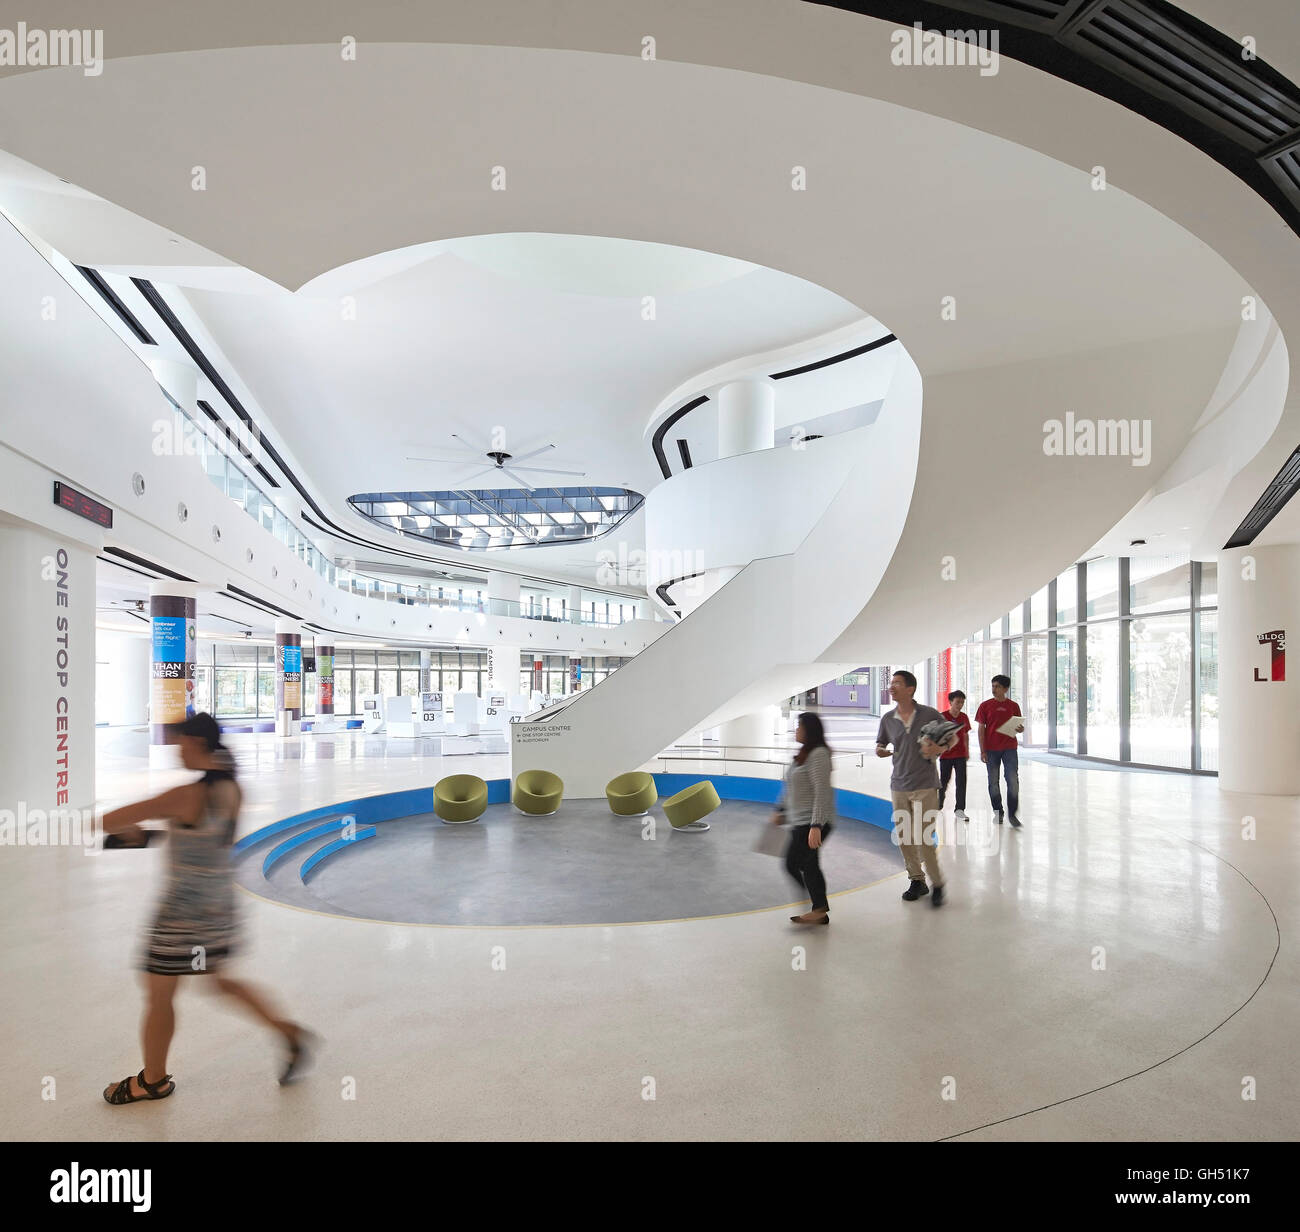 La planta baja cuenta con vestíbulo con escalera circular. Singapur Universidad de Tecnología y diseño, Singapore, Singapur. Arquitecto: UNStudio, 2015. Foto de stock